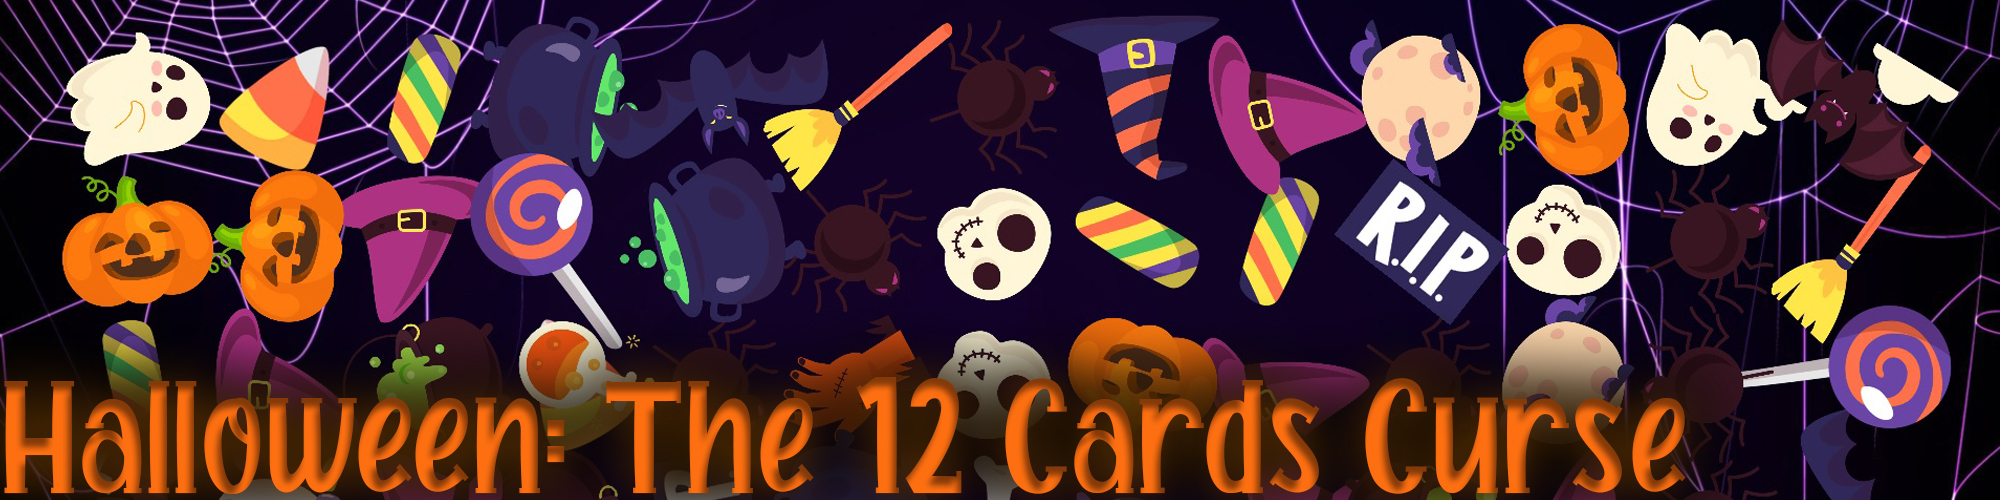 Halloween: The 12 Cards Curse